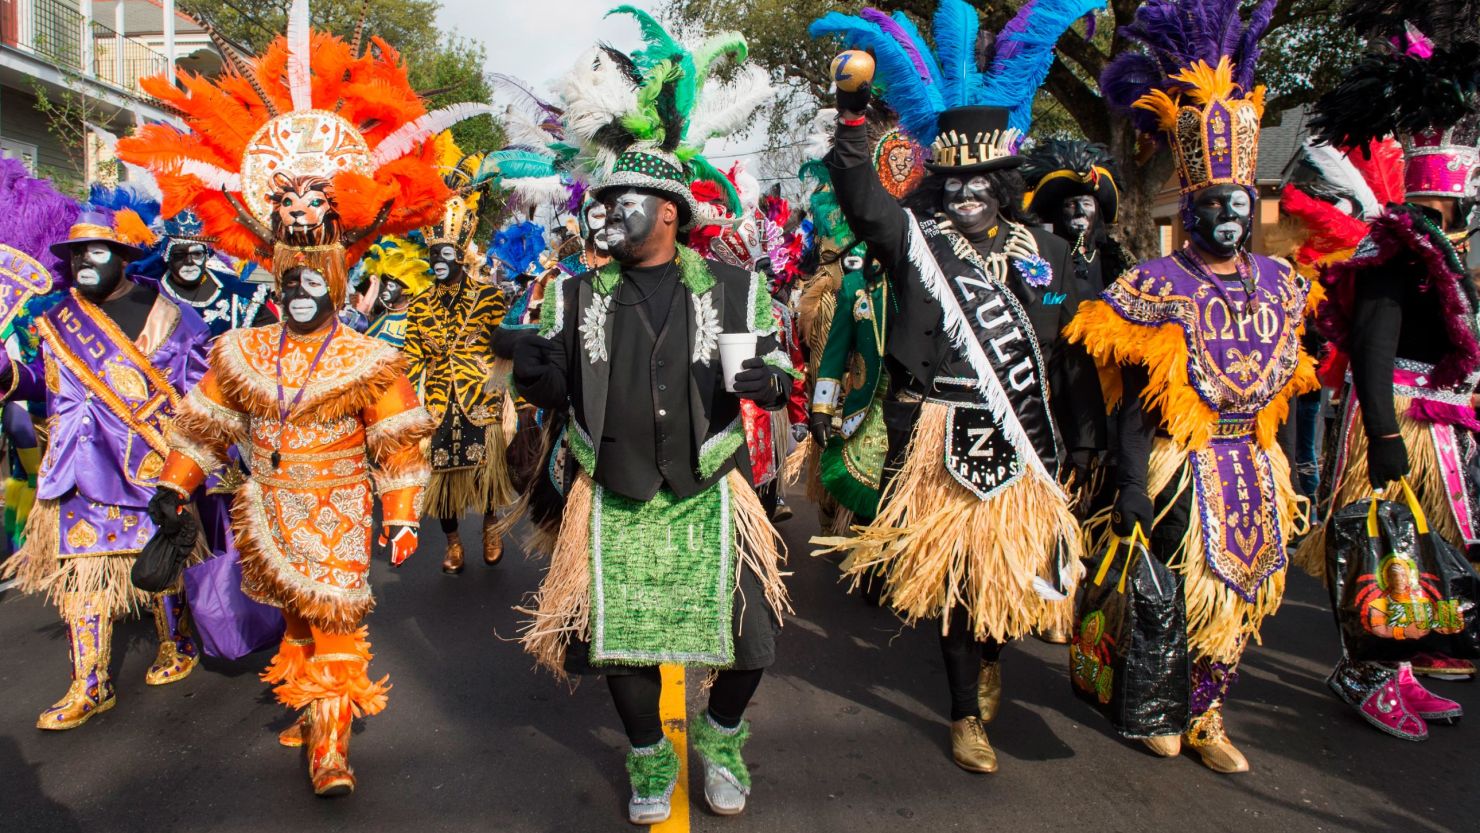 Zulu Social Aid & Pleasure Club members celebrate Mardi Gras in 2017 in New Orleans.